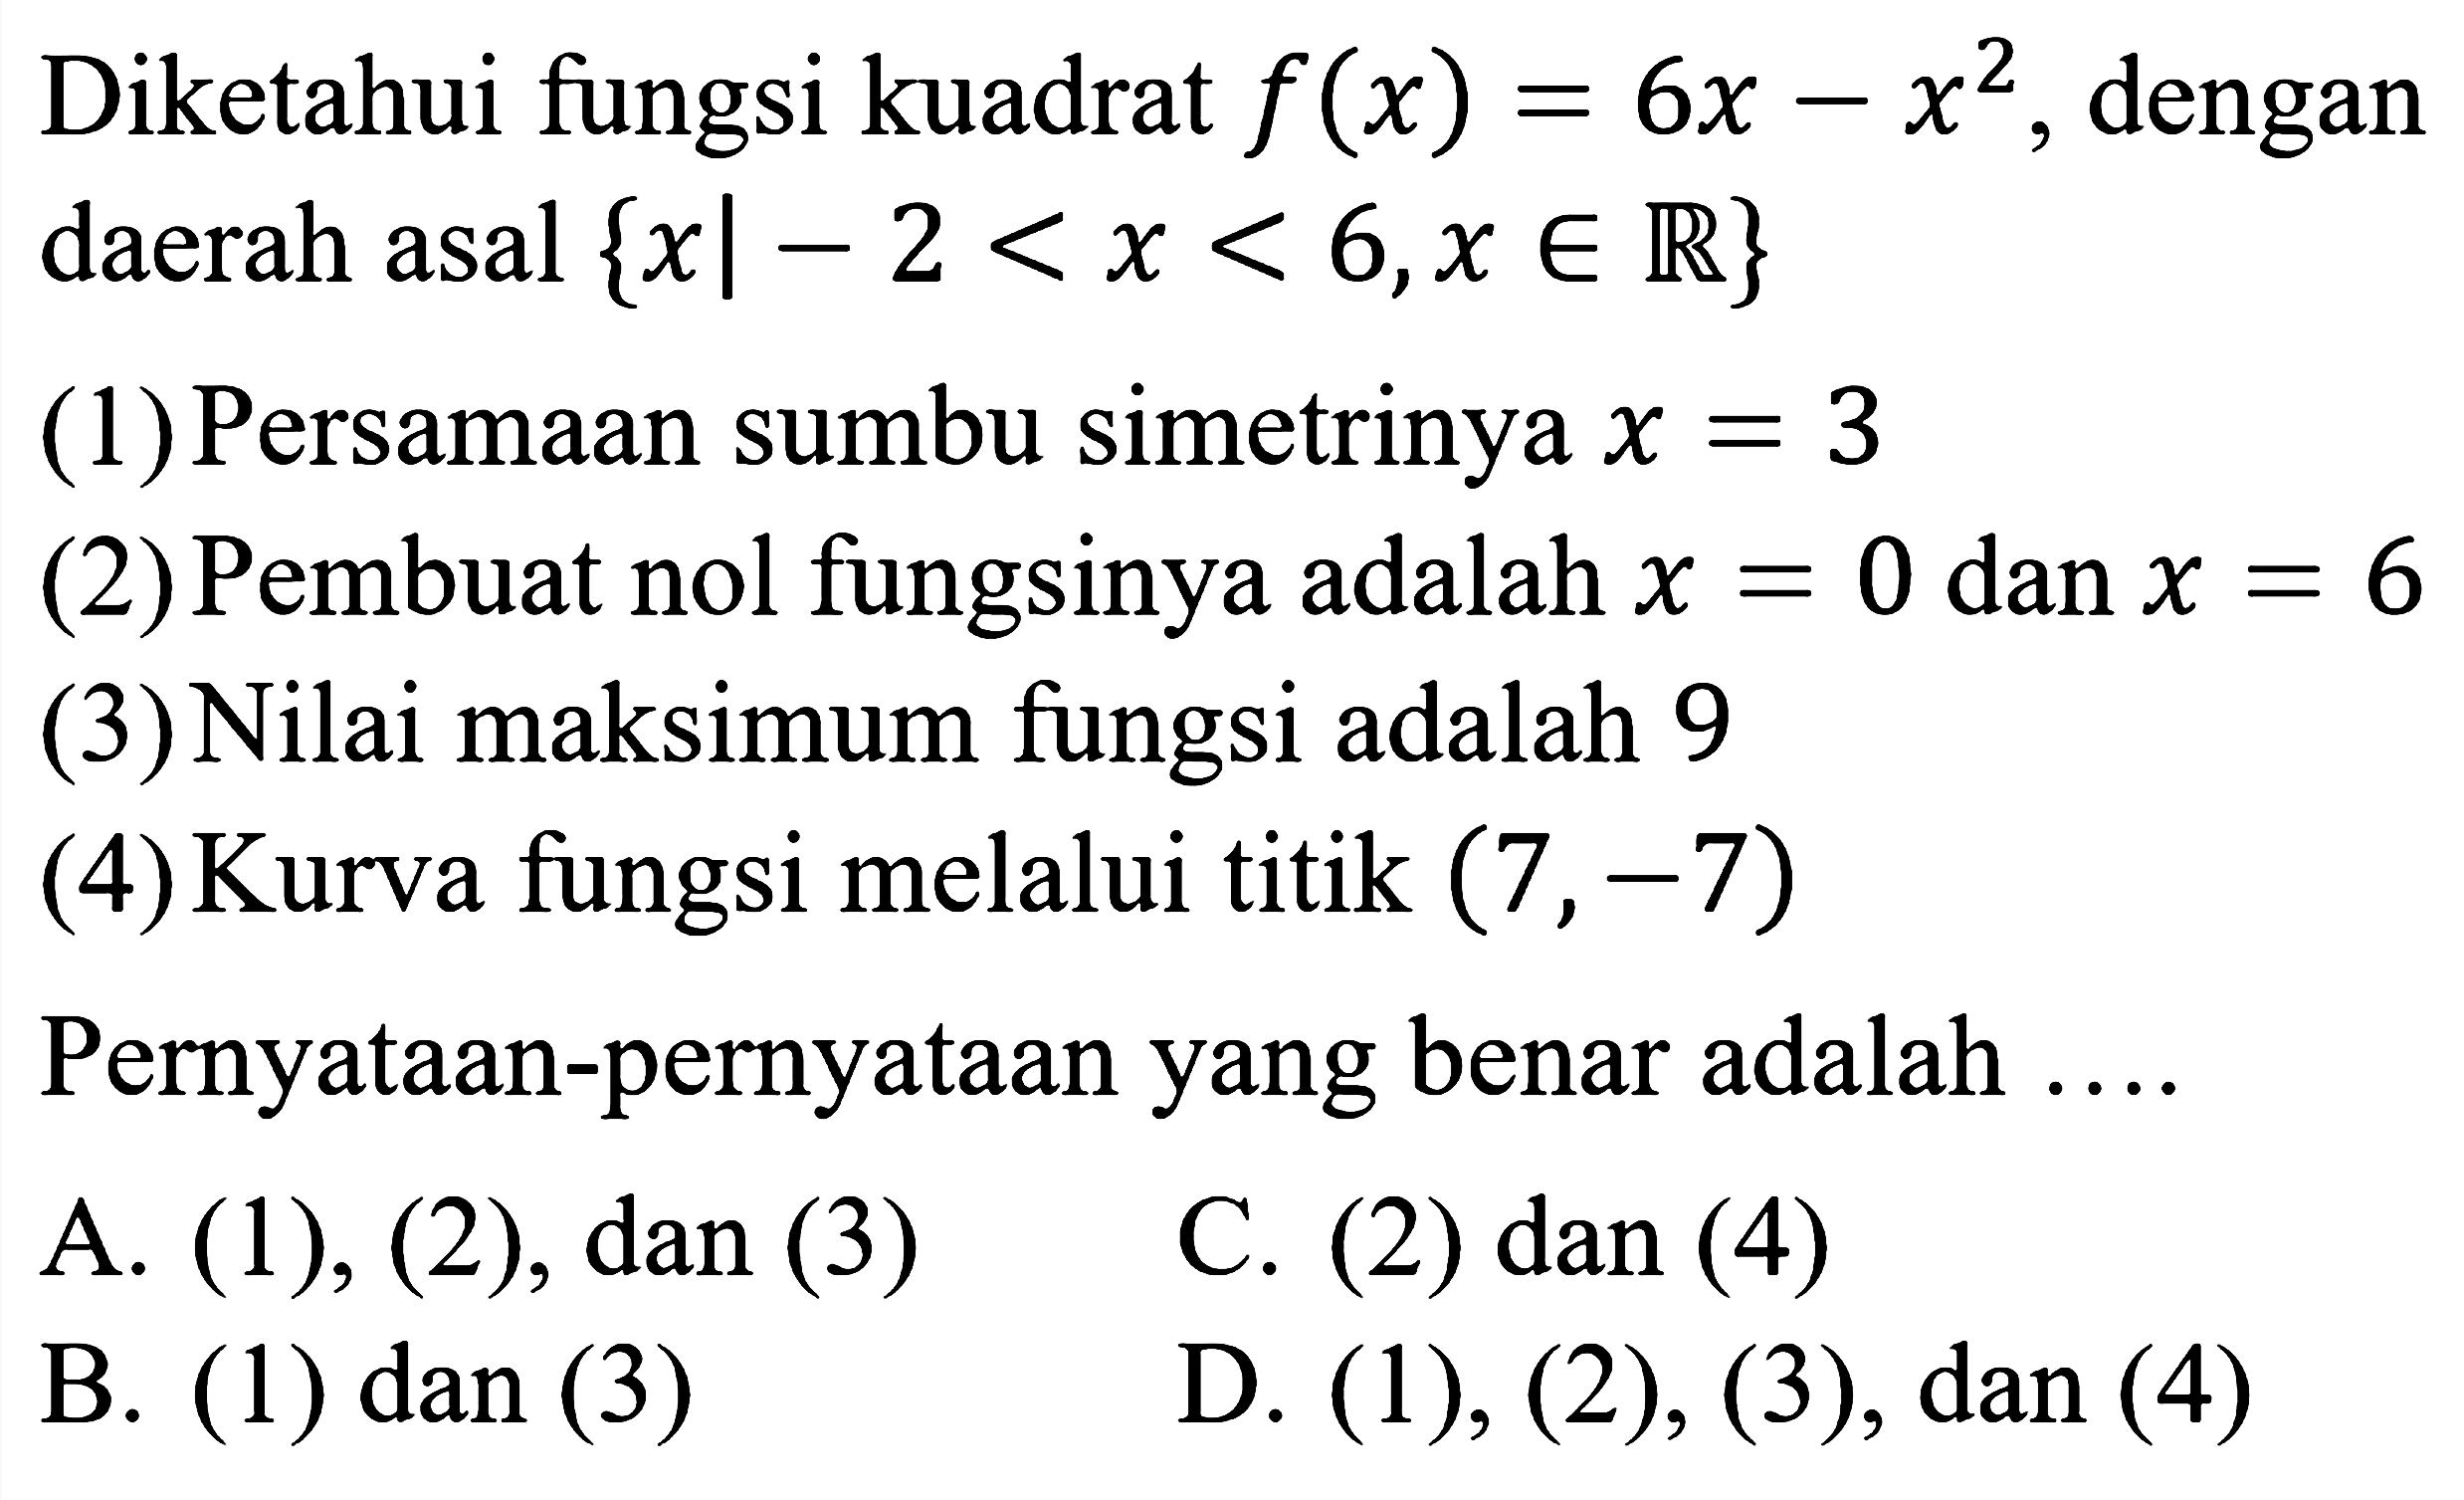 Diketahui fungsi kuadrat  f(x)=6 x-x^2 , dengan daerah asal  {x |-2<x<6, x in {R)} 
(1) Persamaan sumbu simetrinya  x=3 
(2) Pembuat nol fungsinya adalah  x=0  dan  x=6 
(3) Nilai maksimum fungsi adalah 9
(4) Kurva fungsi melalui titik  (7,-7) 
Pernyataan-pernyataan yang benar adalah ....
A.  (1),(2), dan(3) 
C. (2) dan (4)
B. (1) dan (3)
D.  (1),(2),(3), dan(4) 